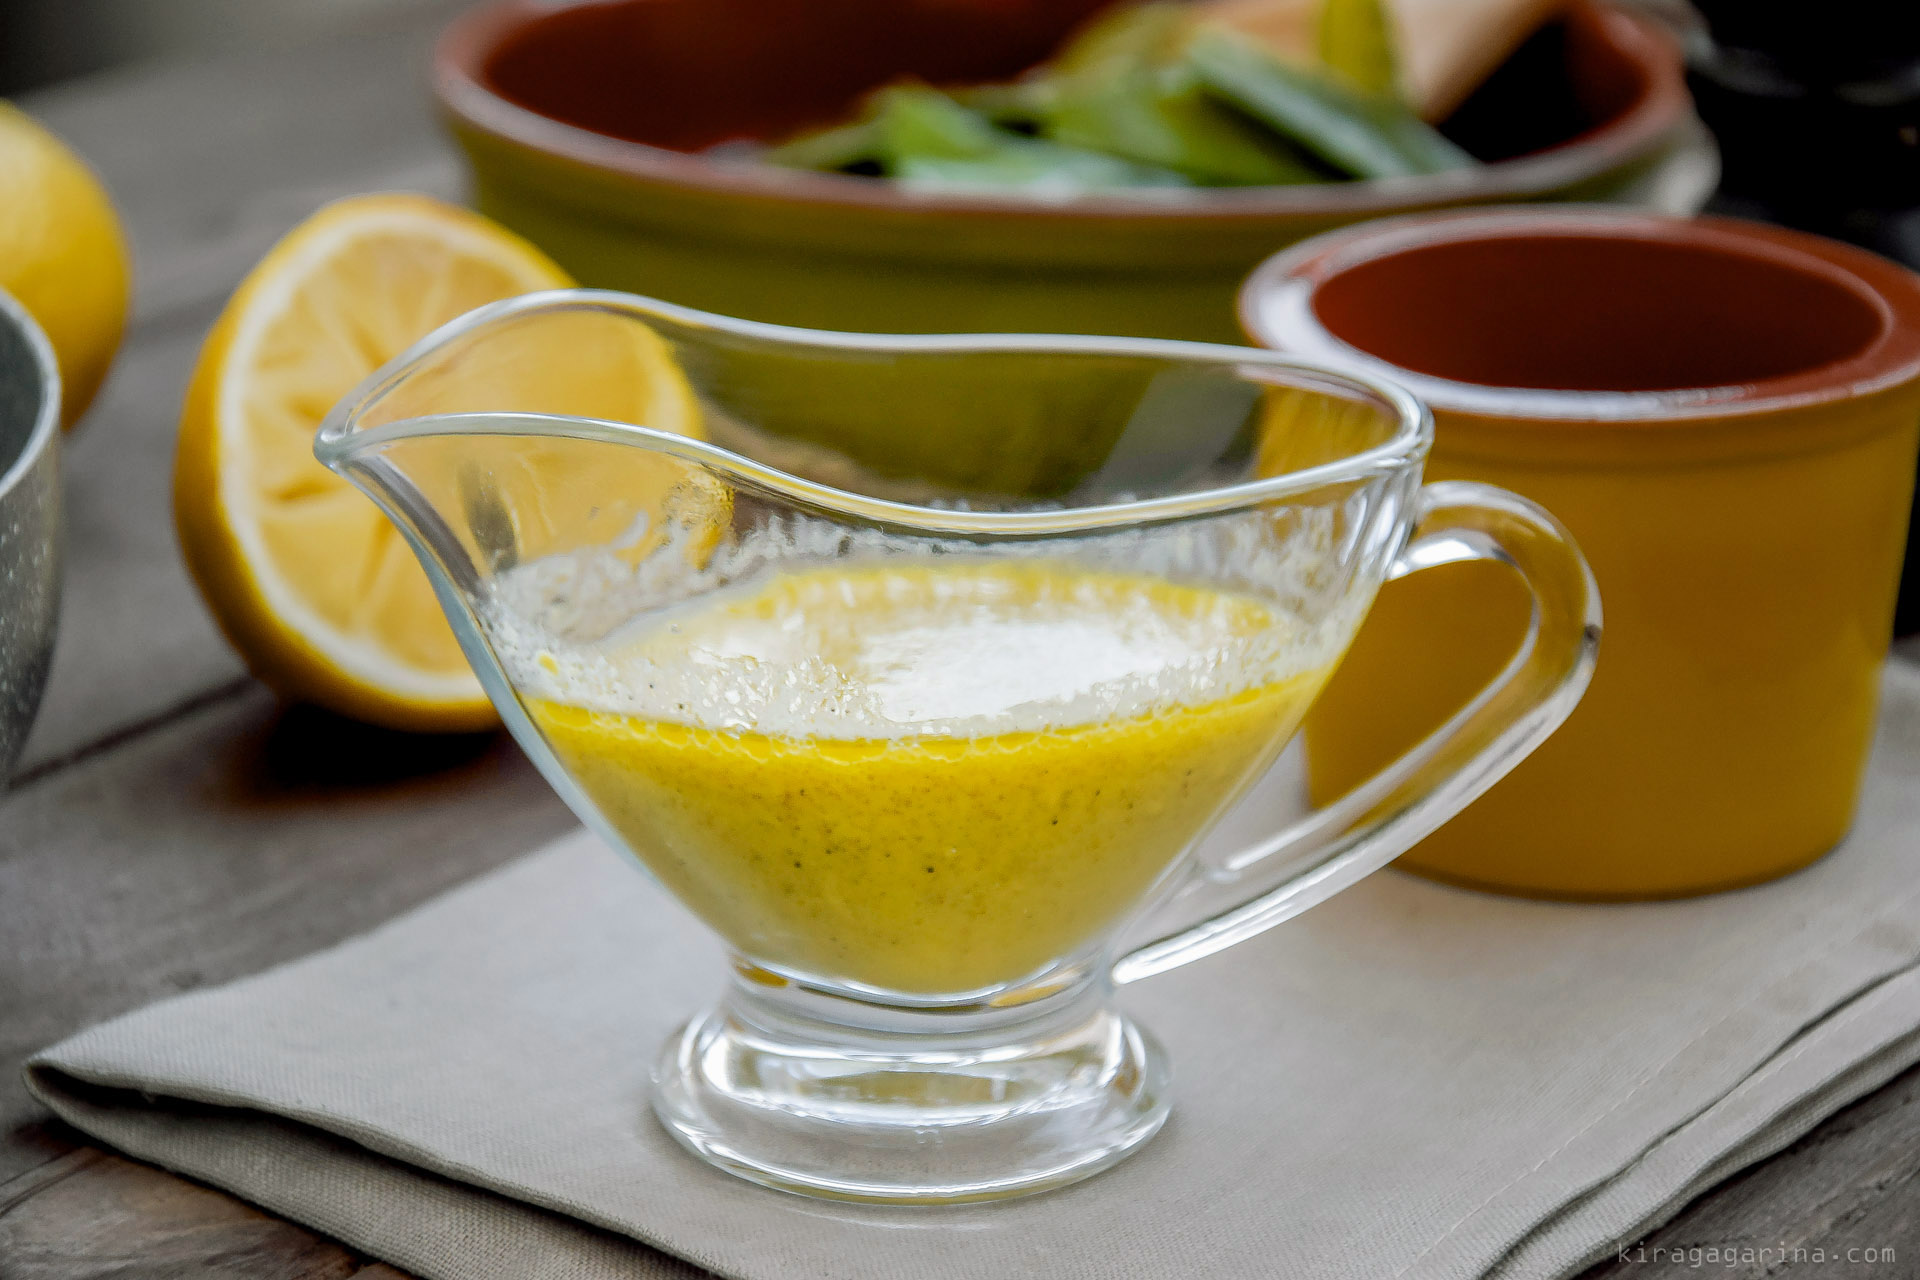 Заправка для салата горчица оливковое масло. Лимонный соус. Лимонный соус к рыбе. Лимонно горчичный соус. Соусы на растительном масле.